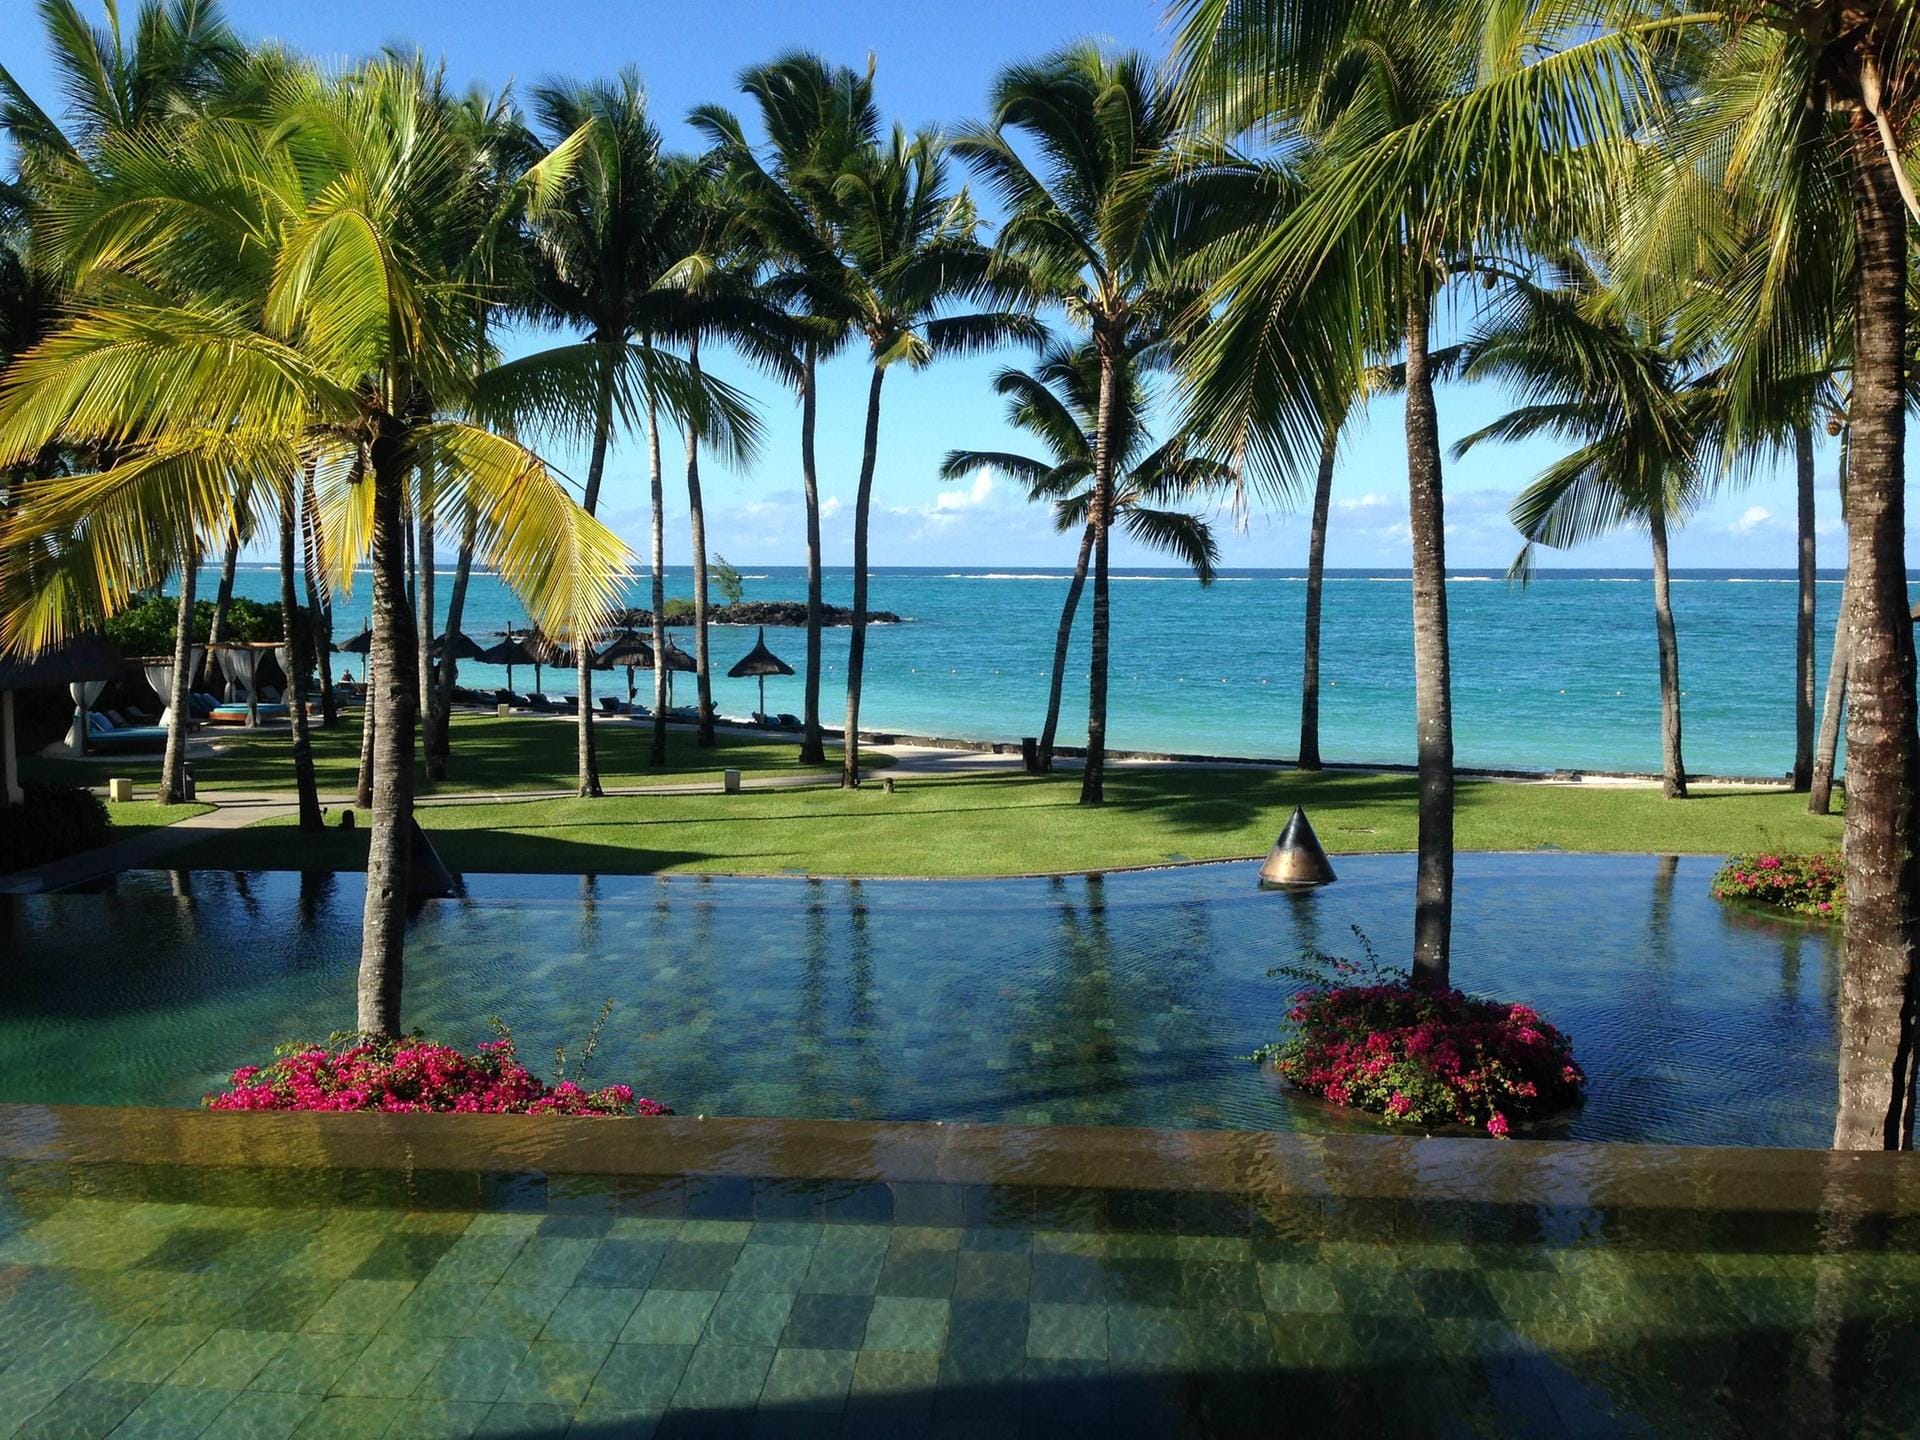 Am zwei Kilometer langen Sandstrand des 5-Sterne-Hotels Constance Belle Mare Plage auf Mauritius findet garantiert jedes Familienmitglied ein ungestörtes Plätzchen unter der eigenen Palme.